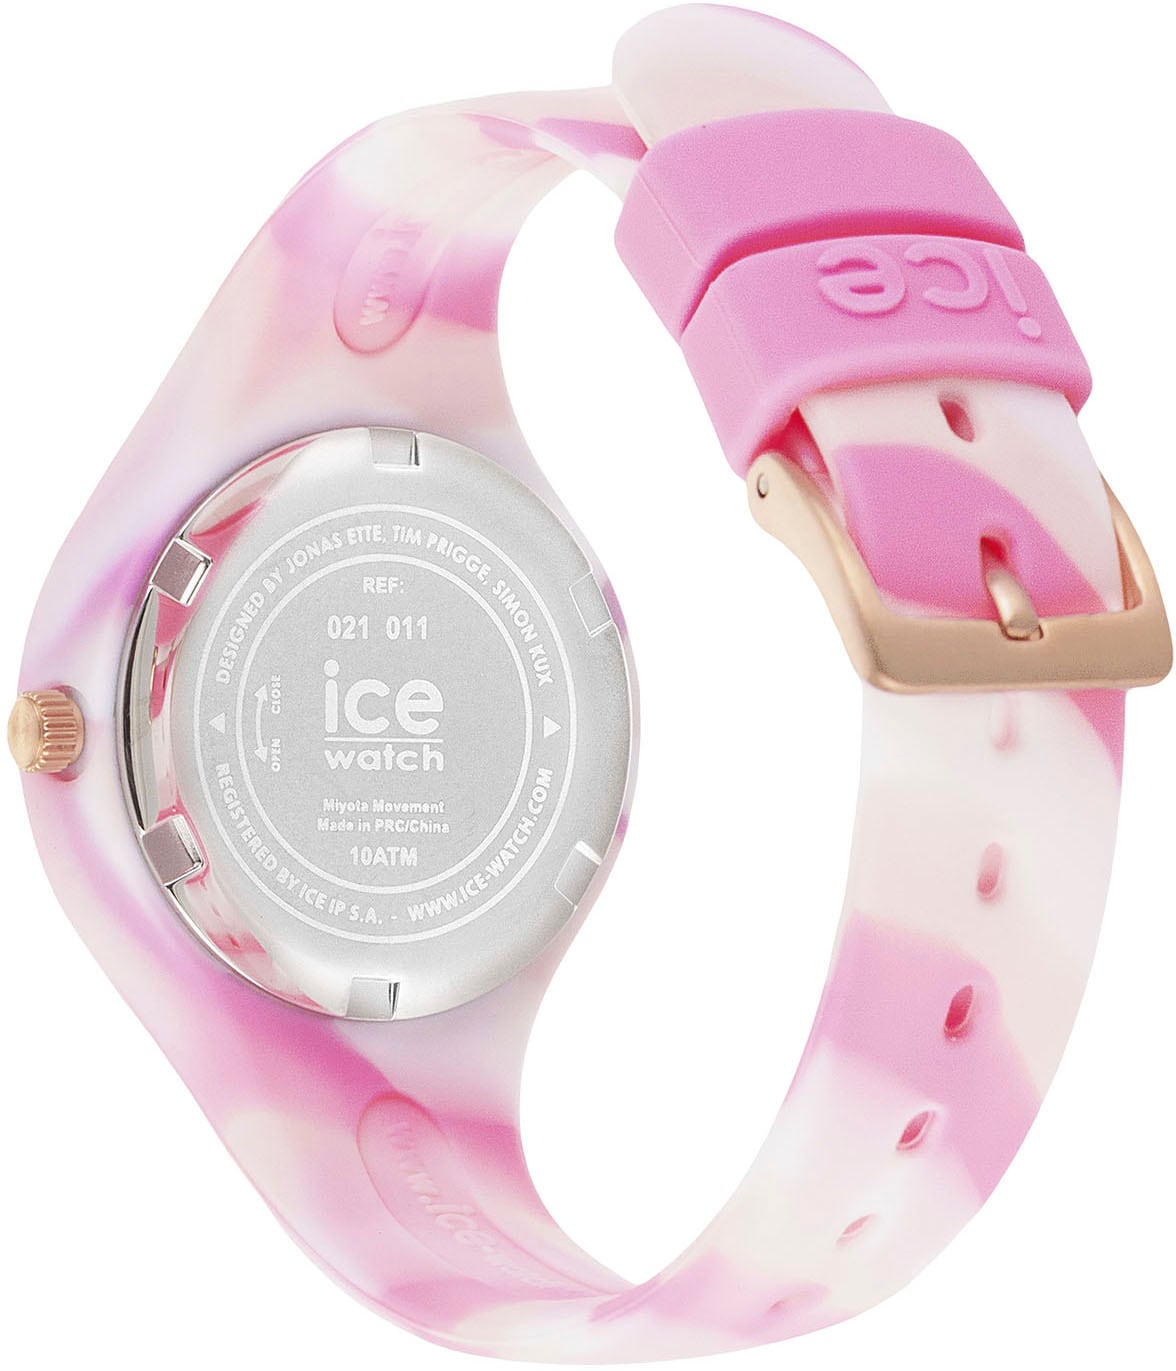 ice-watch Quarzuhr ideal walking and Extra-Small Onlineshop tie shades als auch - - Geschenk Pink dye I\'m - »ICE 3H, im | 021011«